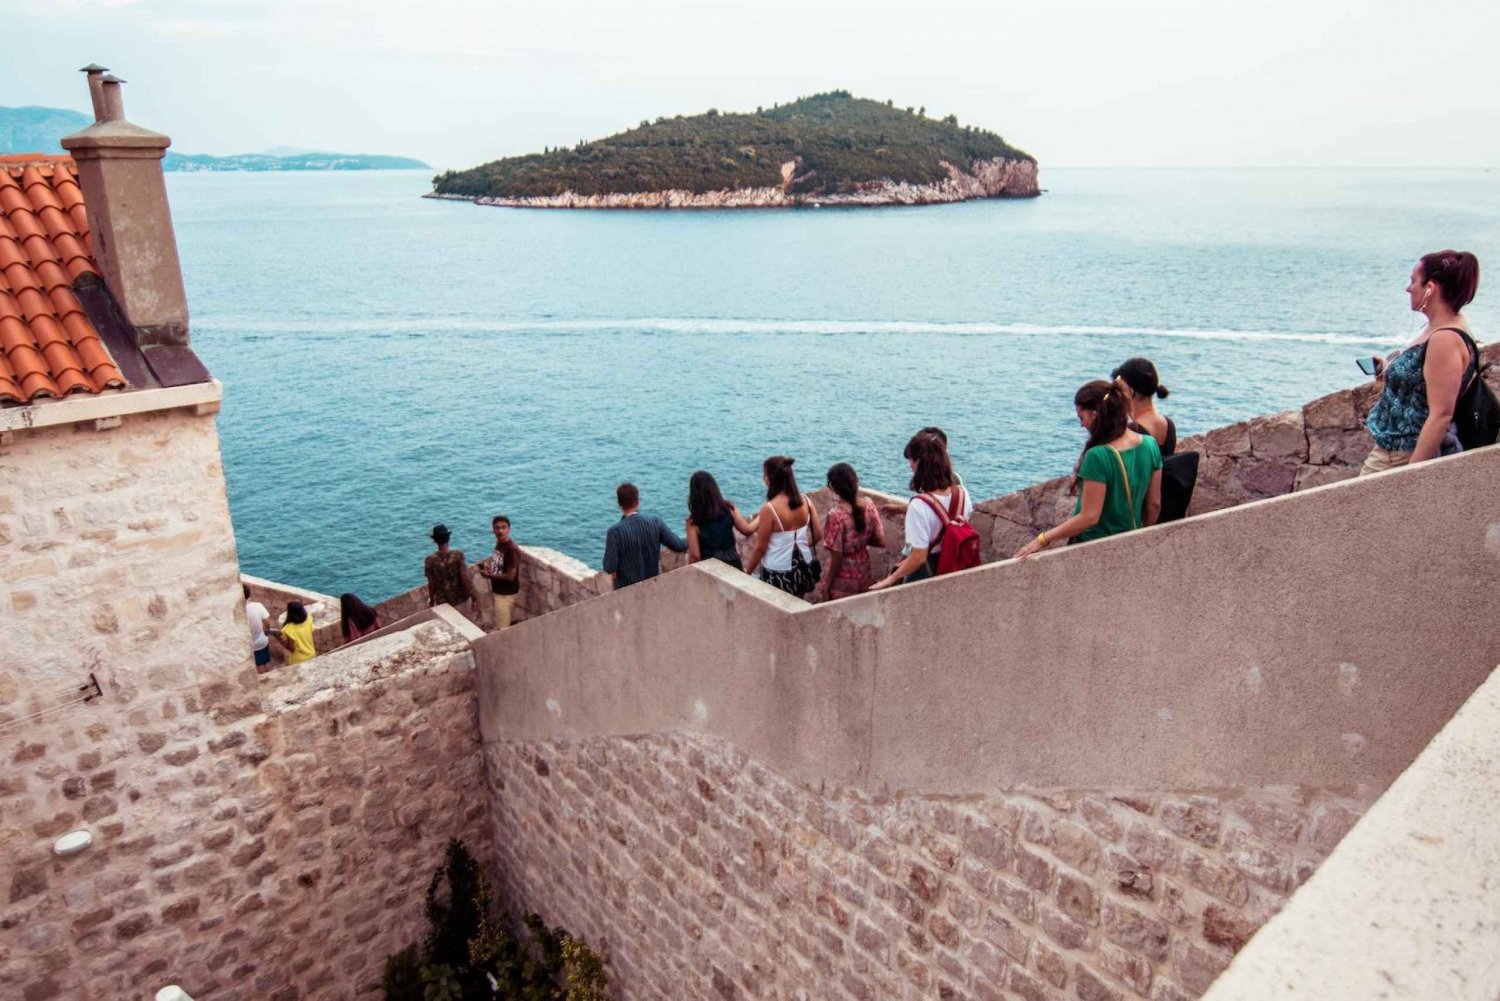 Dubrovnik: Walls and Wars Walking Tour